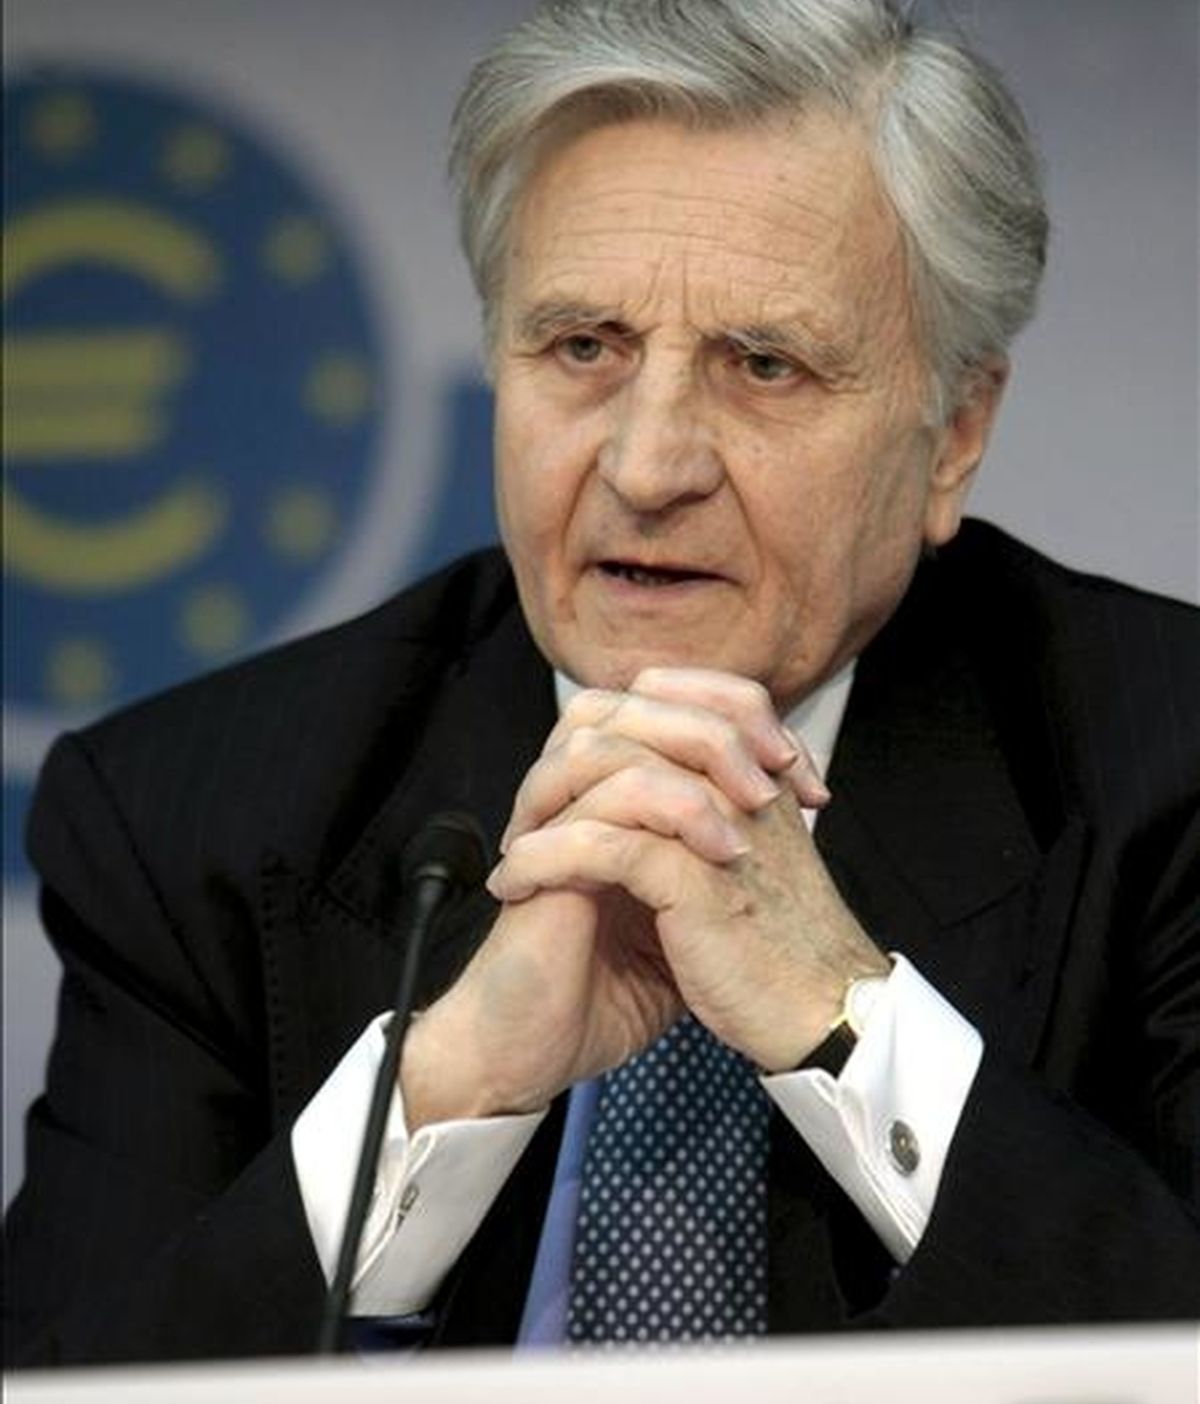 El presidente del Banco Central Europeo (BCE), Jean-Claude Trichet, negó que haya disensiones en el consejo de gobierno de esa entidad. En la imagen, Trichet durante una rueda de prensa. EFE/Archivo